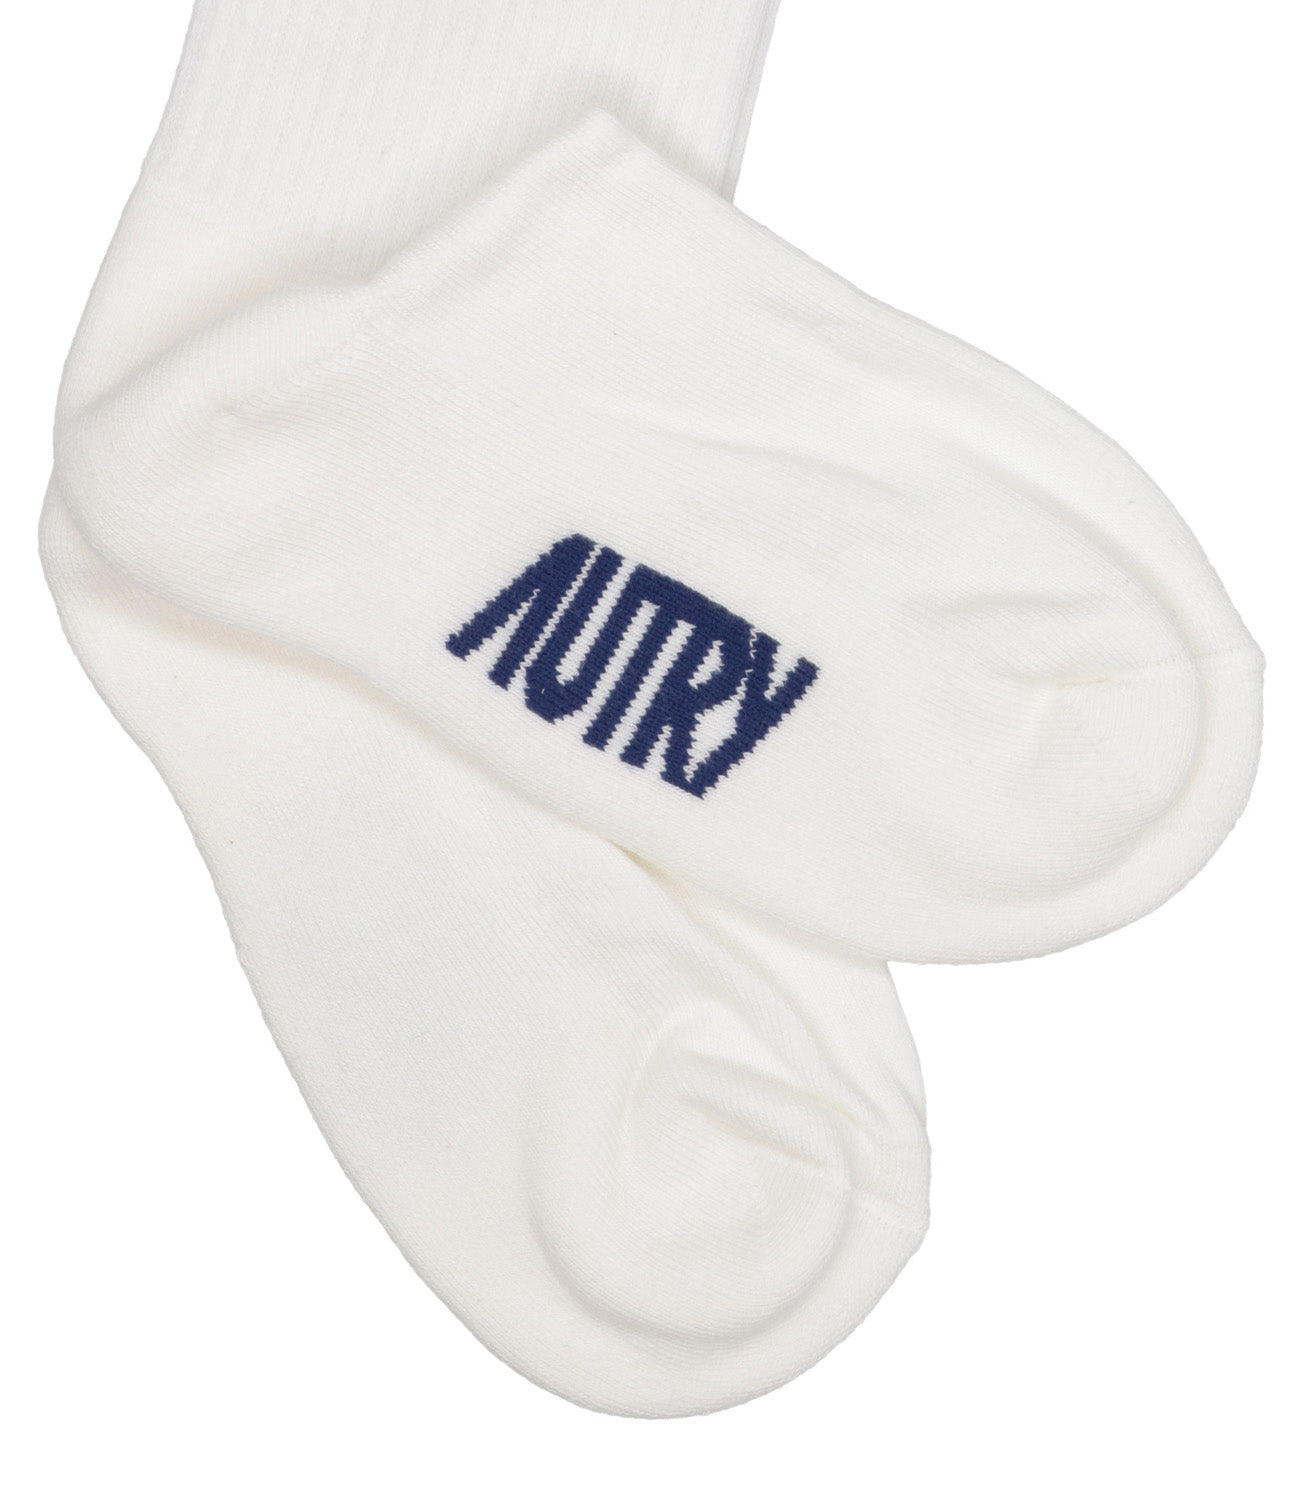 Autry | White Socks